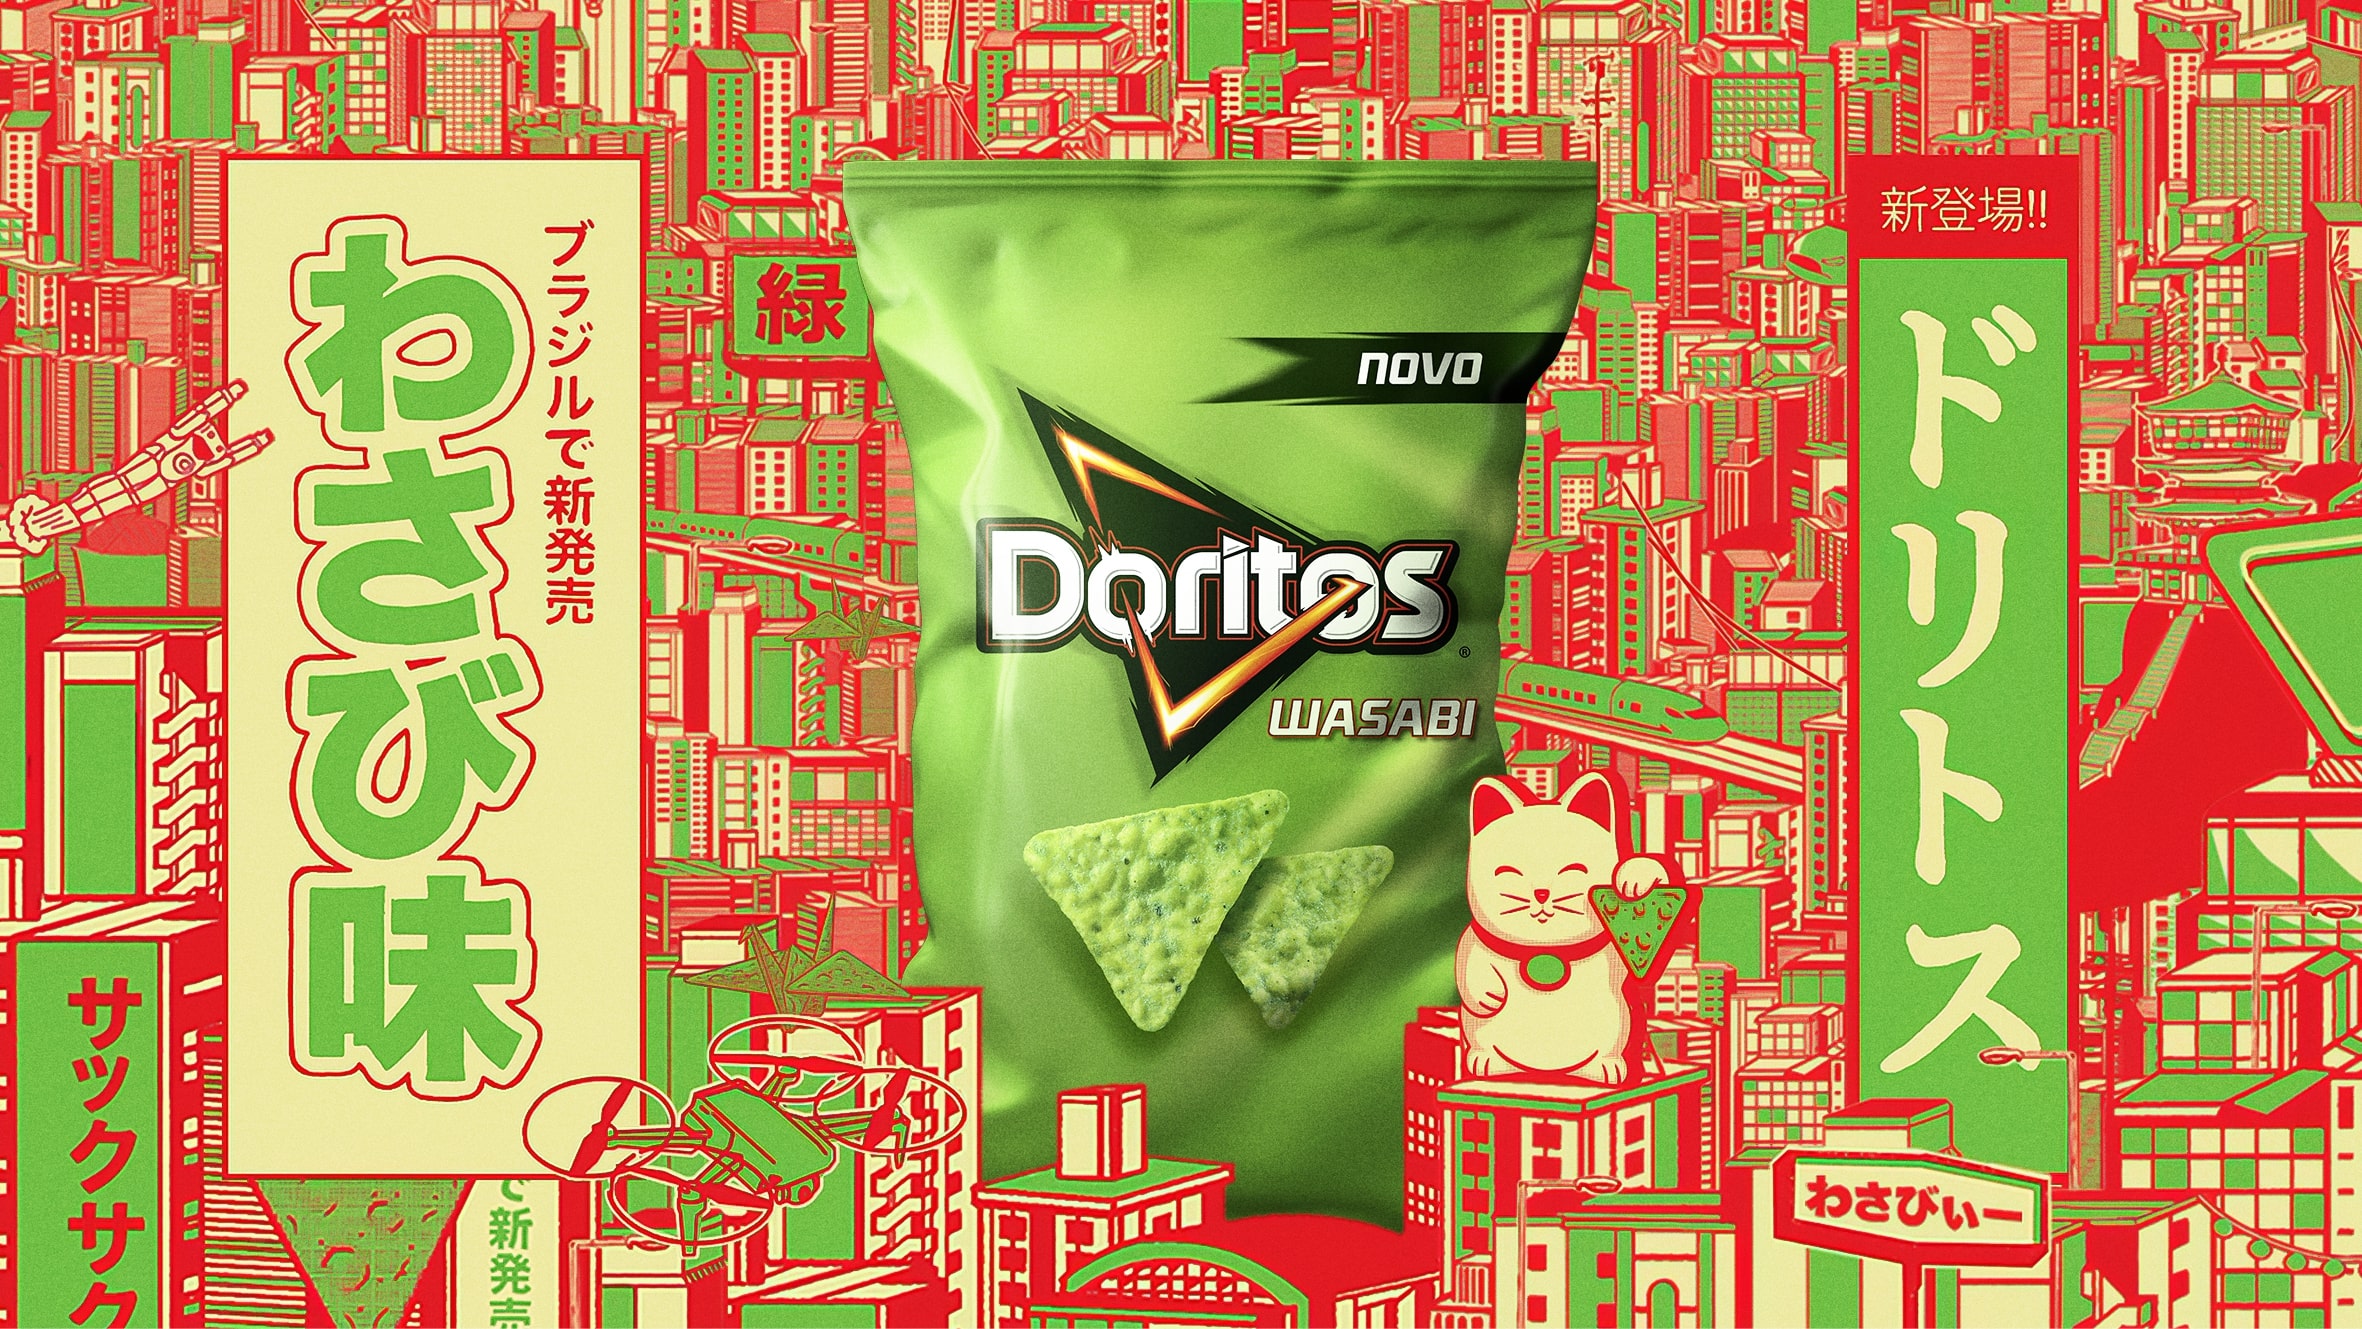 わさび風味のドリトス | Doritos Wasabi